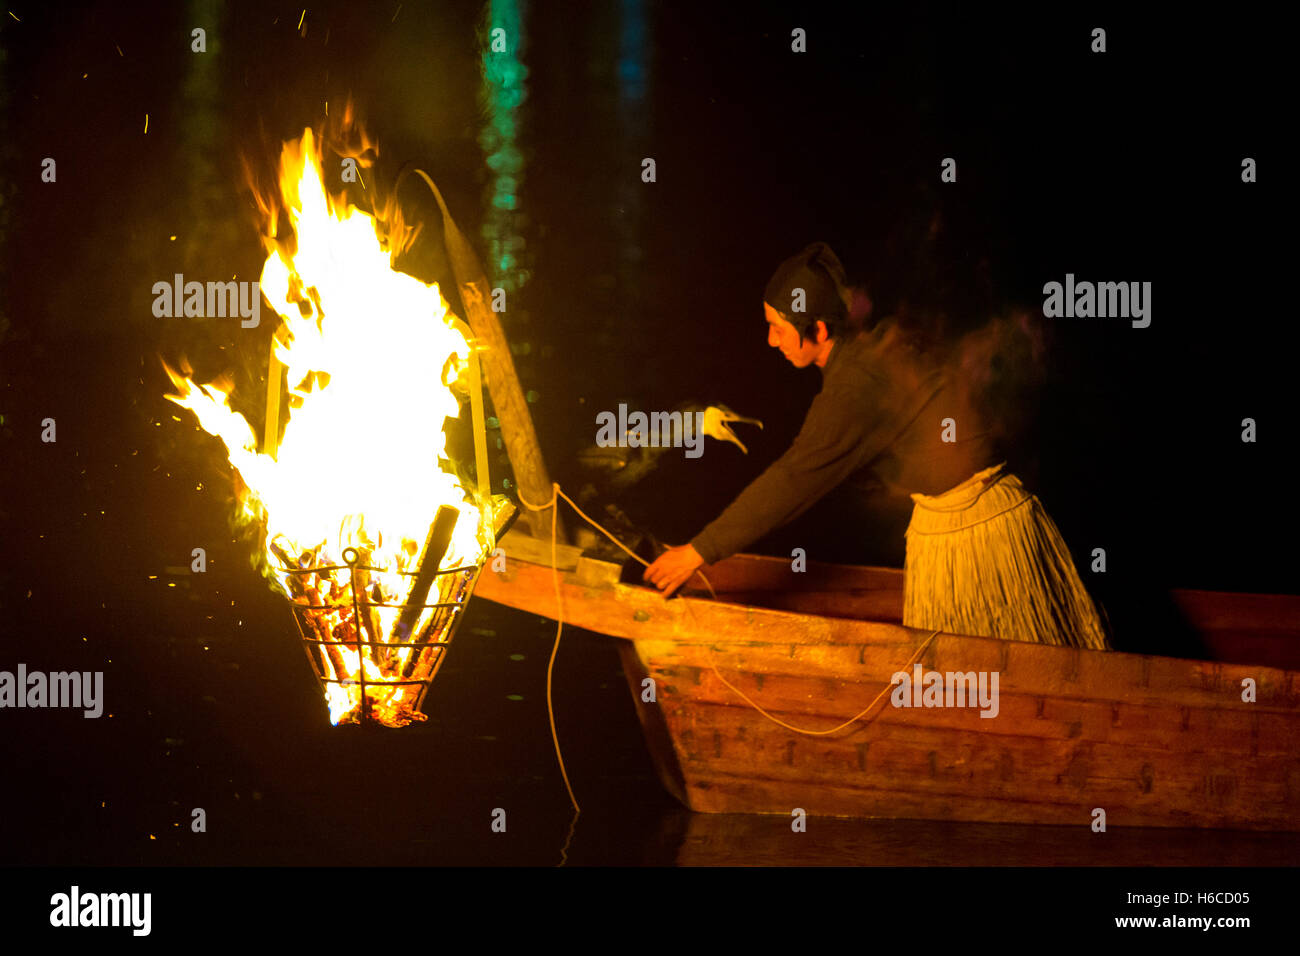 Hombre japonés en hierba, falda, barco de madera, prepara un ave por cormoranes ukai pesca peces de dibujo por un gran fuego en la noche Foto de stock